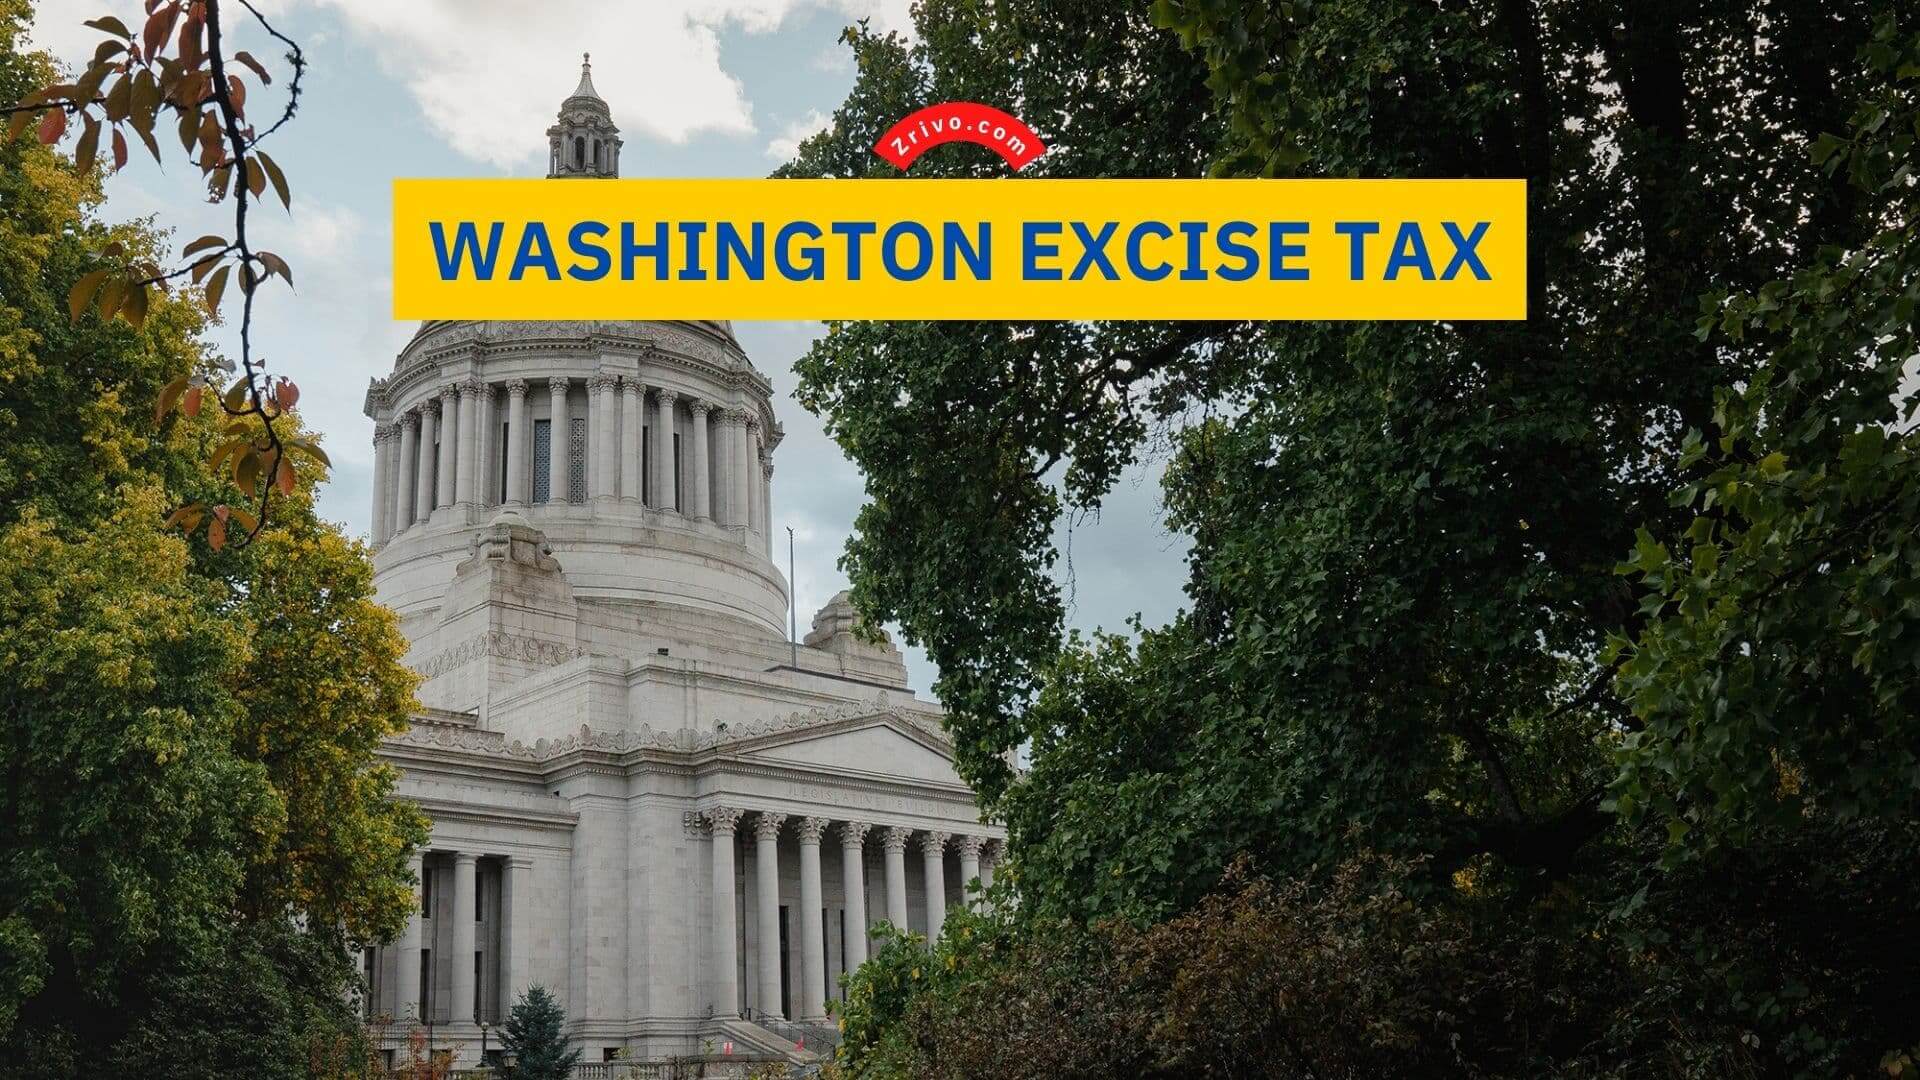 Washington Excise Tax